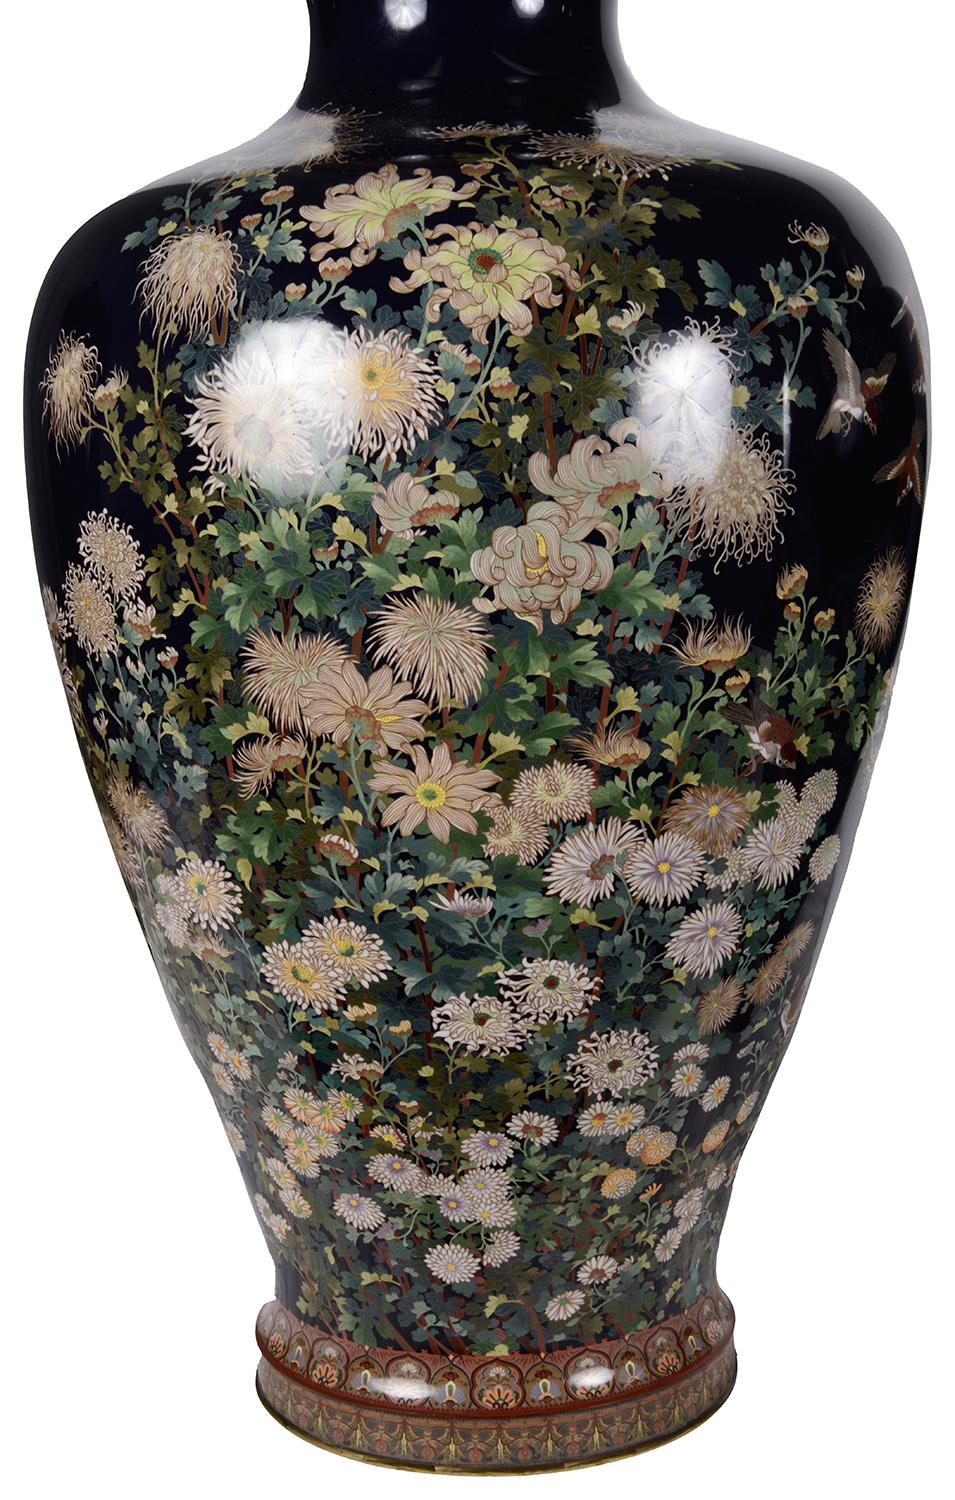 Une fine et rare paire de grands vases japonais en émail cloisonné de la période Meiji (1868-1912), attribués à Hayashi Kodenji 1859-1922.
Le fond est bleu cobalt, les bordures sont décorées de motifs classiques, la flore indigène comprenant des